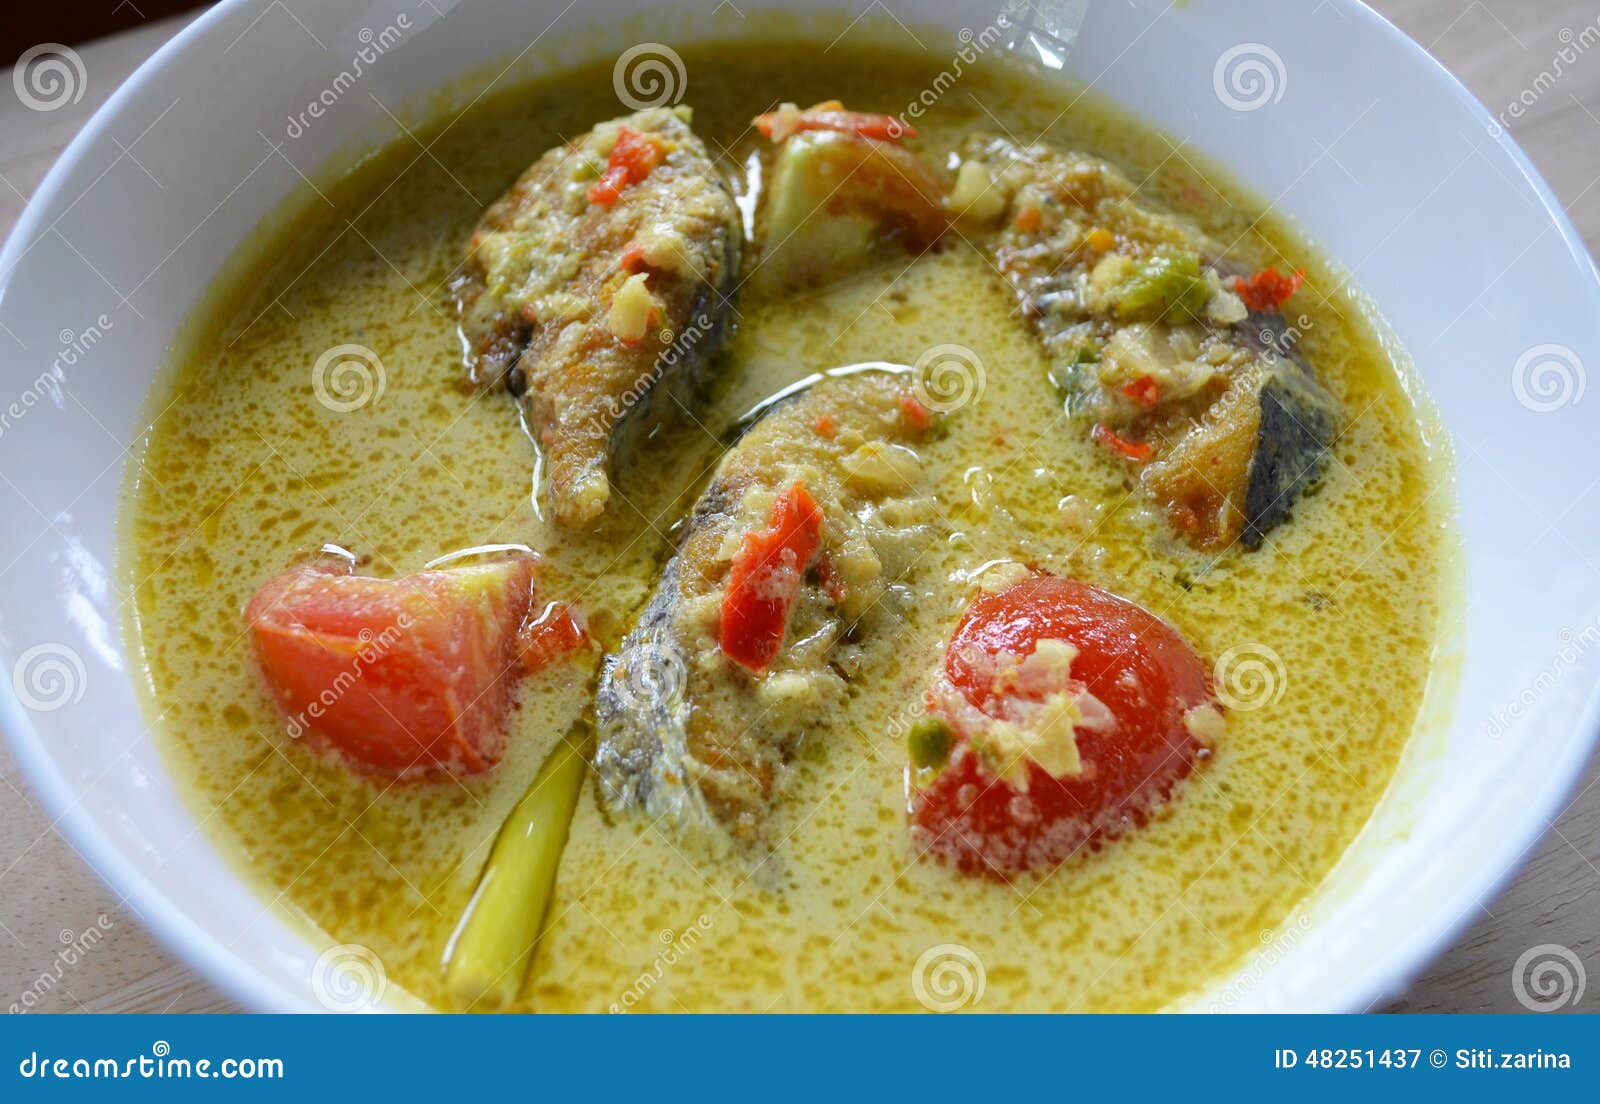 Malay Cuisine - Masak Lemak Cili Api Ikan Tenggiri Stock Image